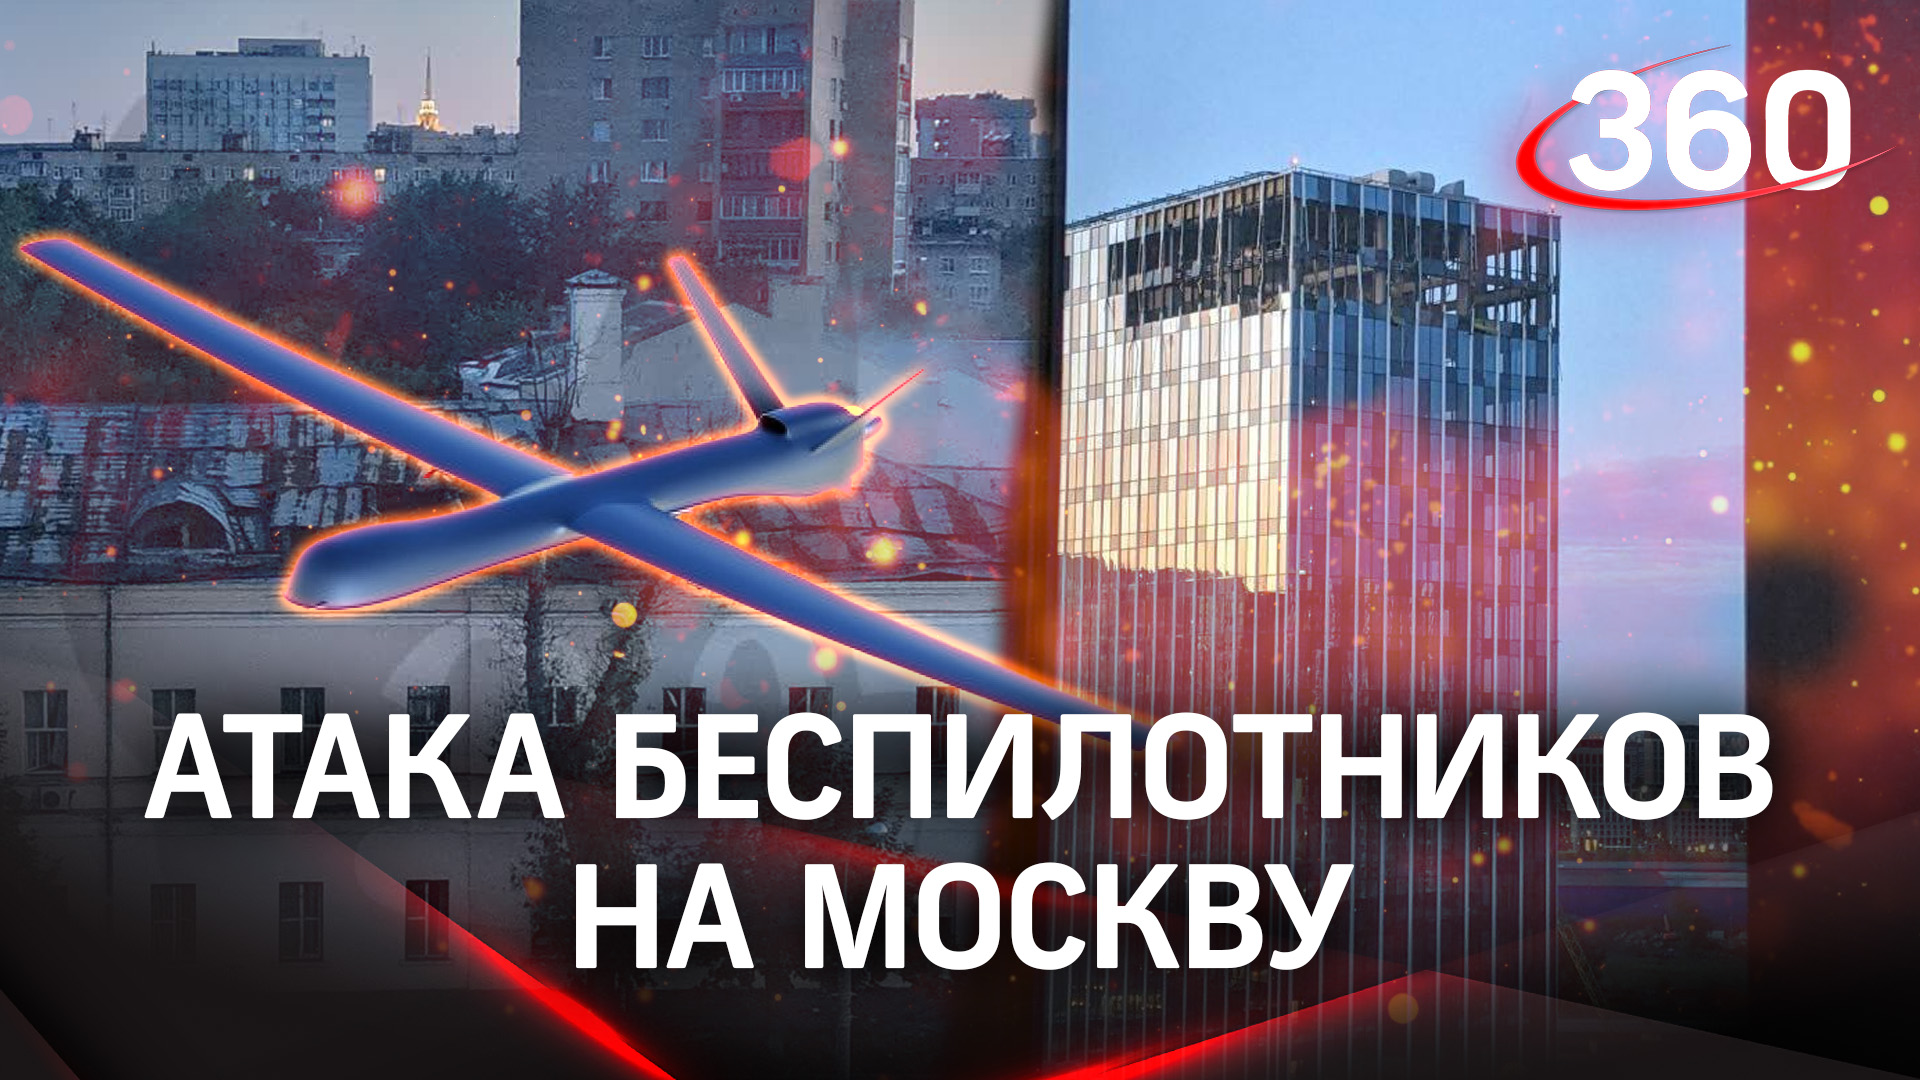 Атака дронов на Москву: выбиты стекла, оцеплены дворы, перекрыто движение. Кадры разрушений